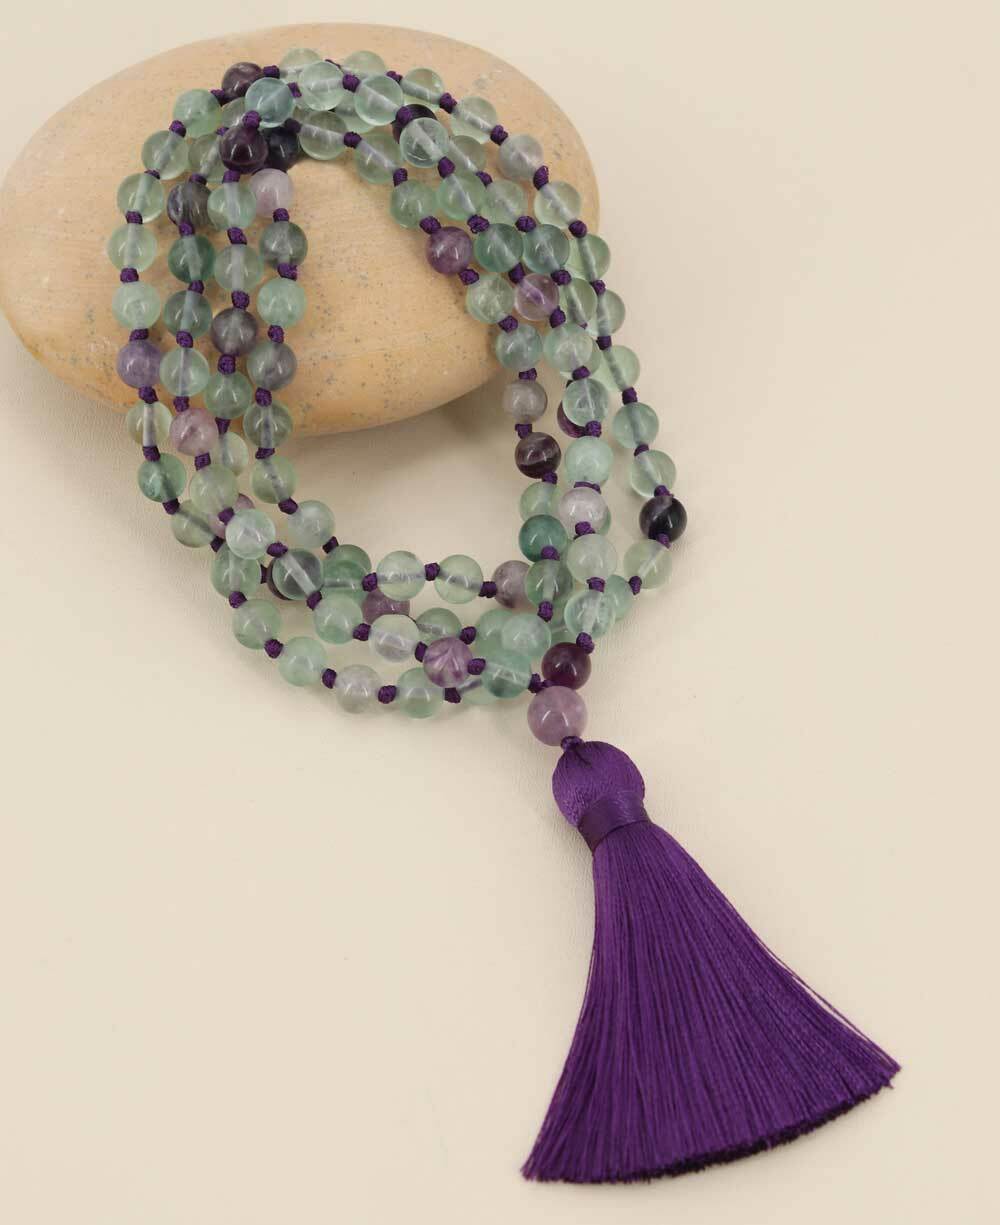 Fluorite Gemstone Meditation Mala, Knotted 108 Beads - Prayer Beads 6mm